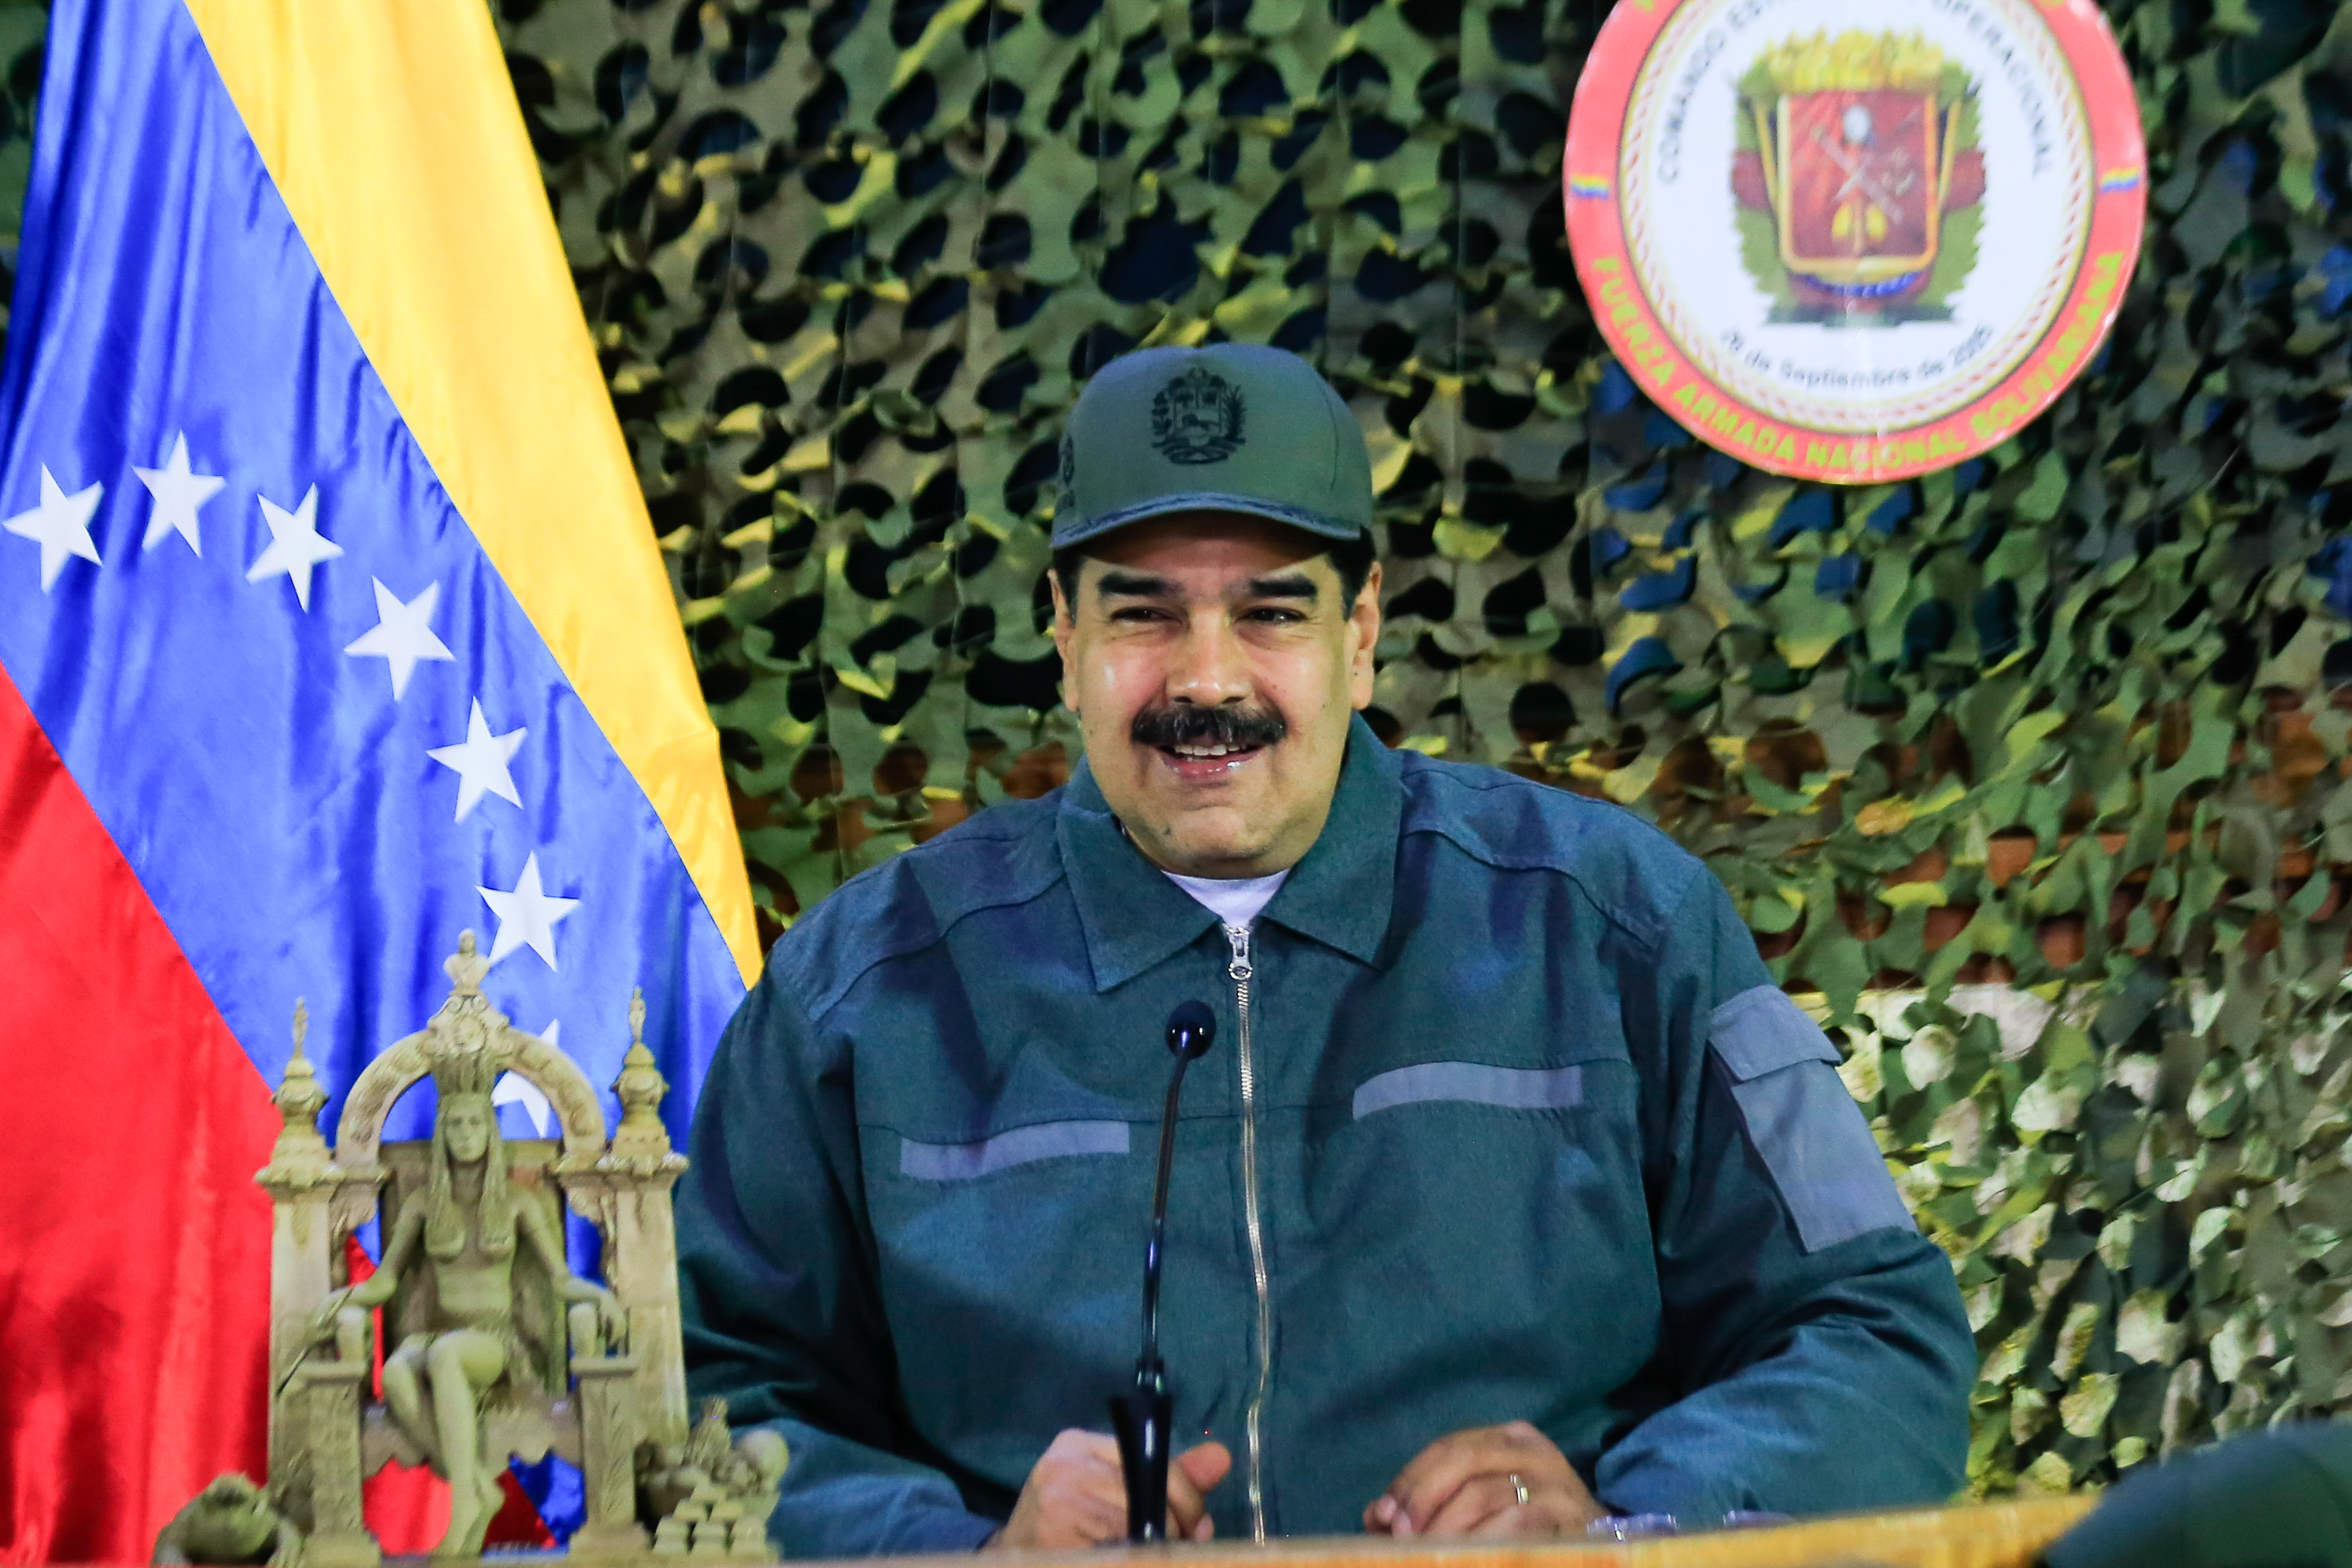 Televisión de Argentina presenta los “Hits de Maduro” (Video)